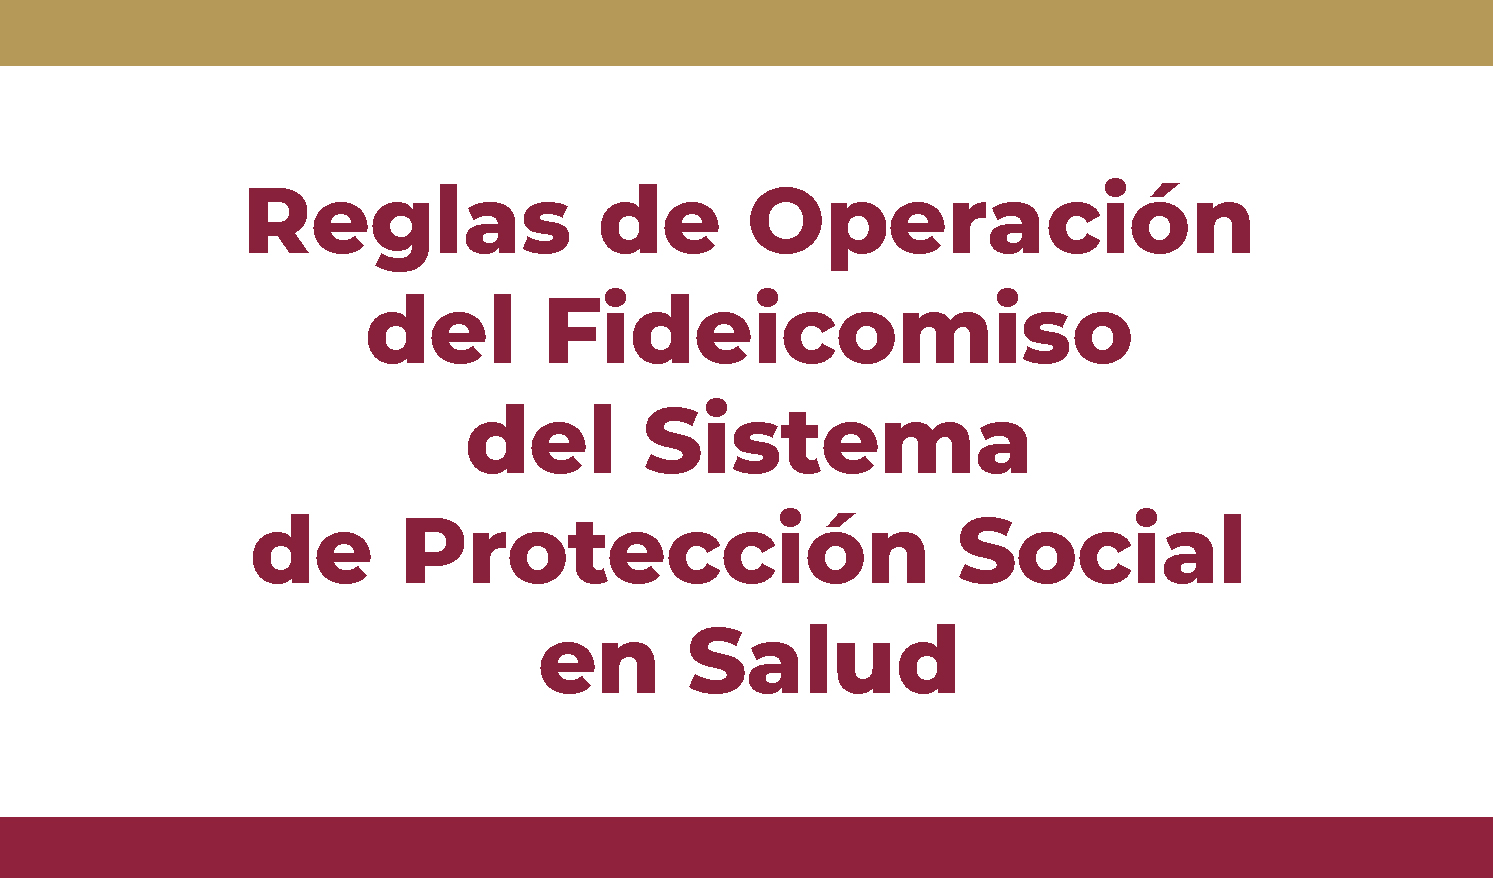 Reglas de Operación actualizadas del Fideicomiso del Sistema de Protección Social en Salud 2019